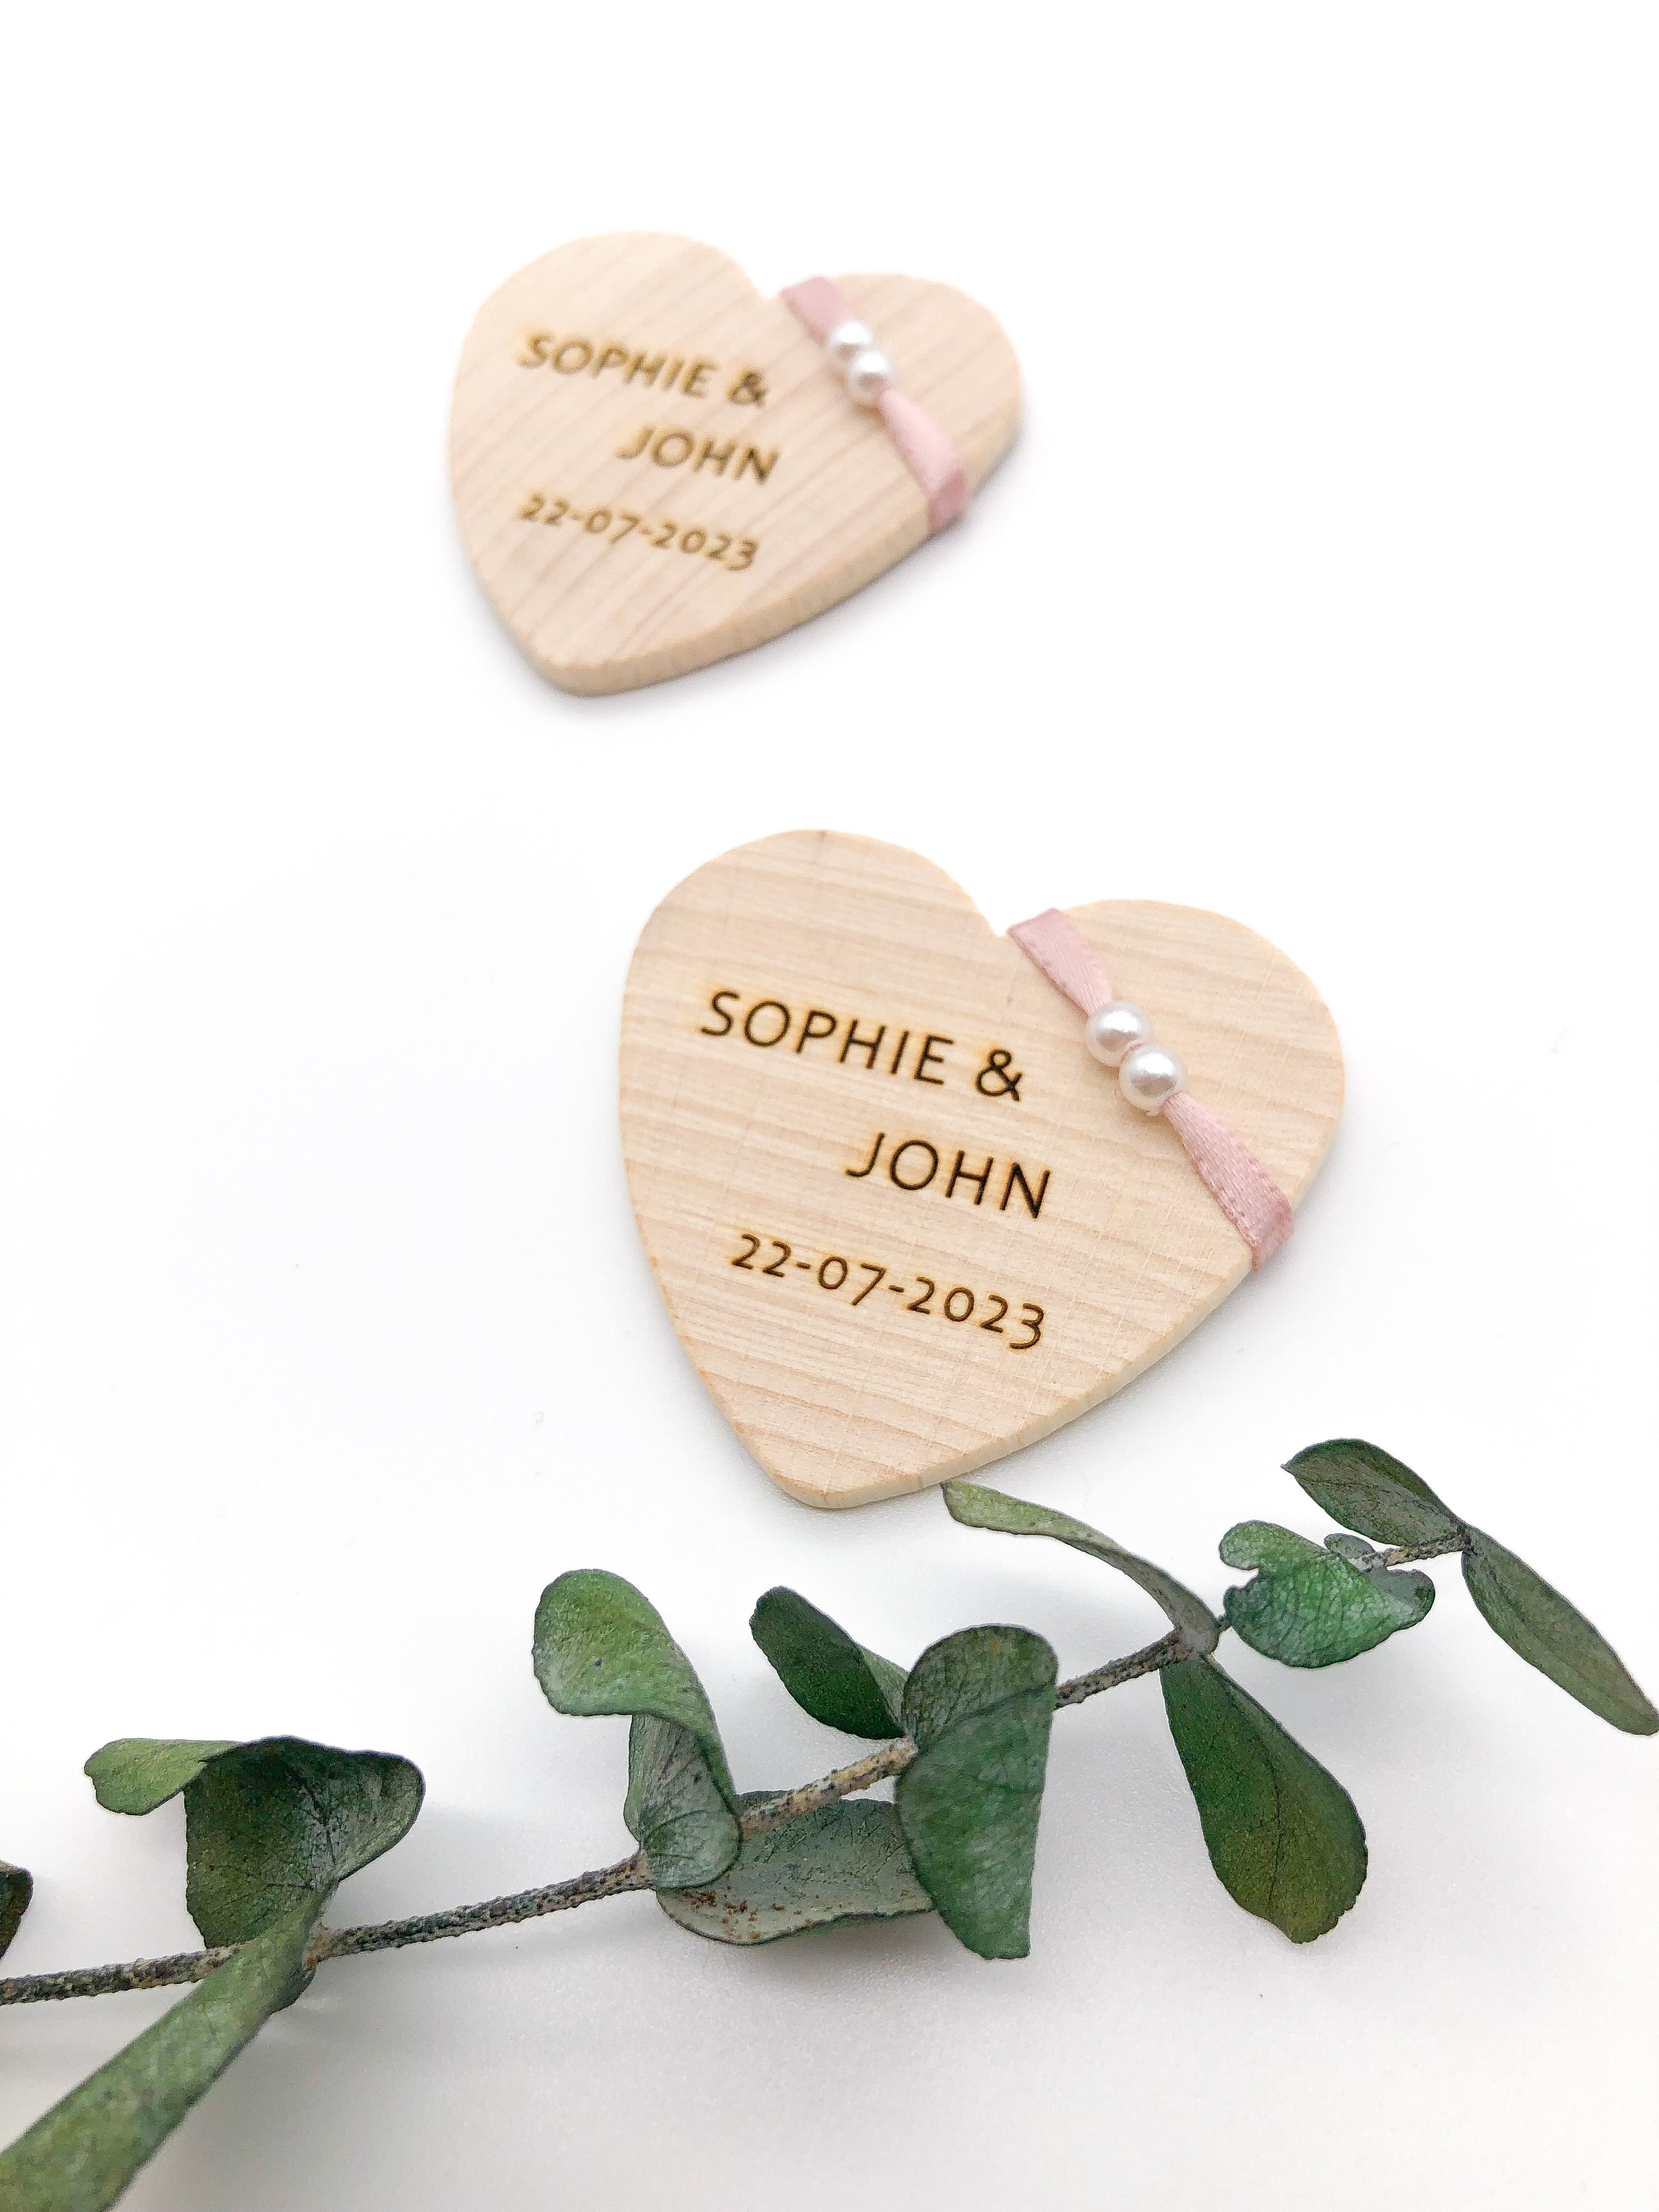 Anstecker Hochzeit Gäste aus Holz Herzform personalisiert mit Band blush rosé und weißen Perlen